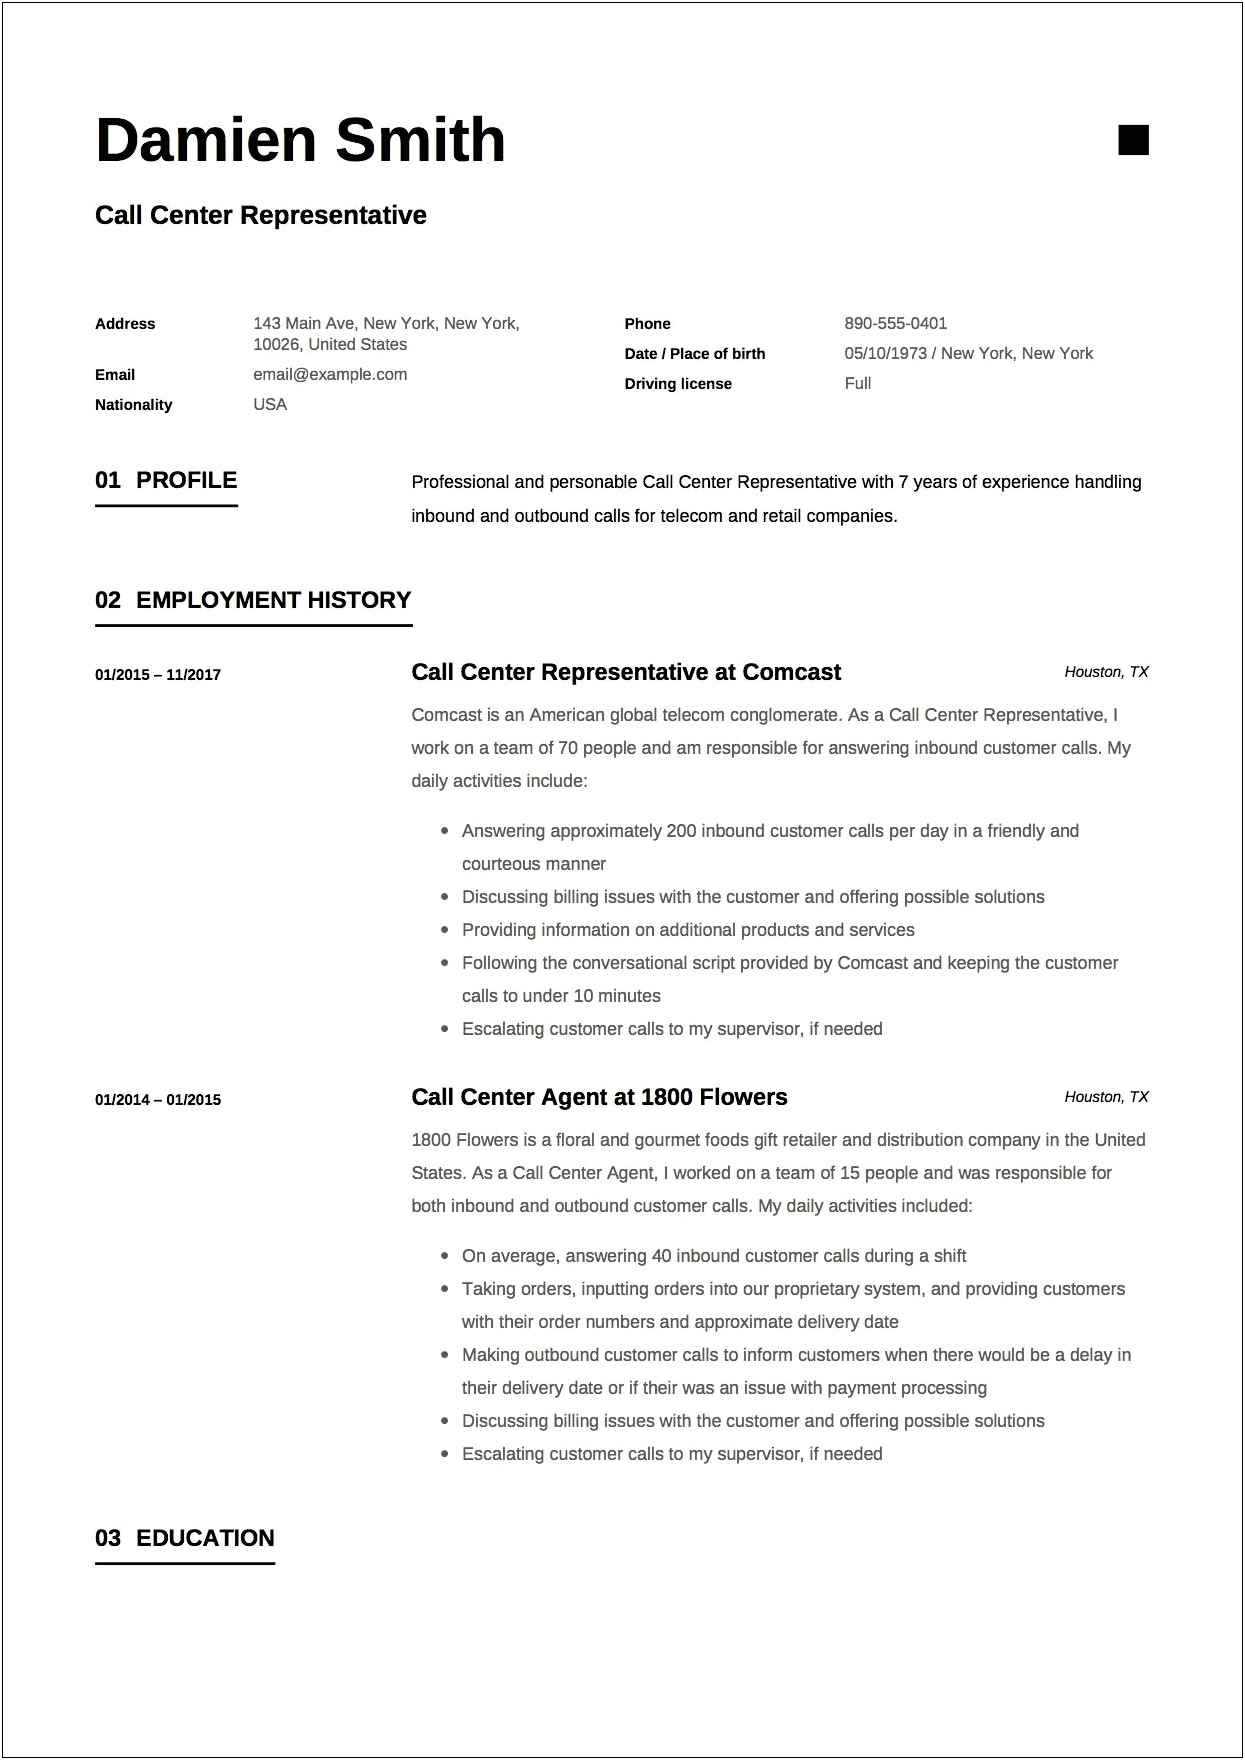 Sample Resume Format For Bpo Jobs